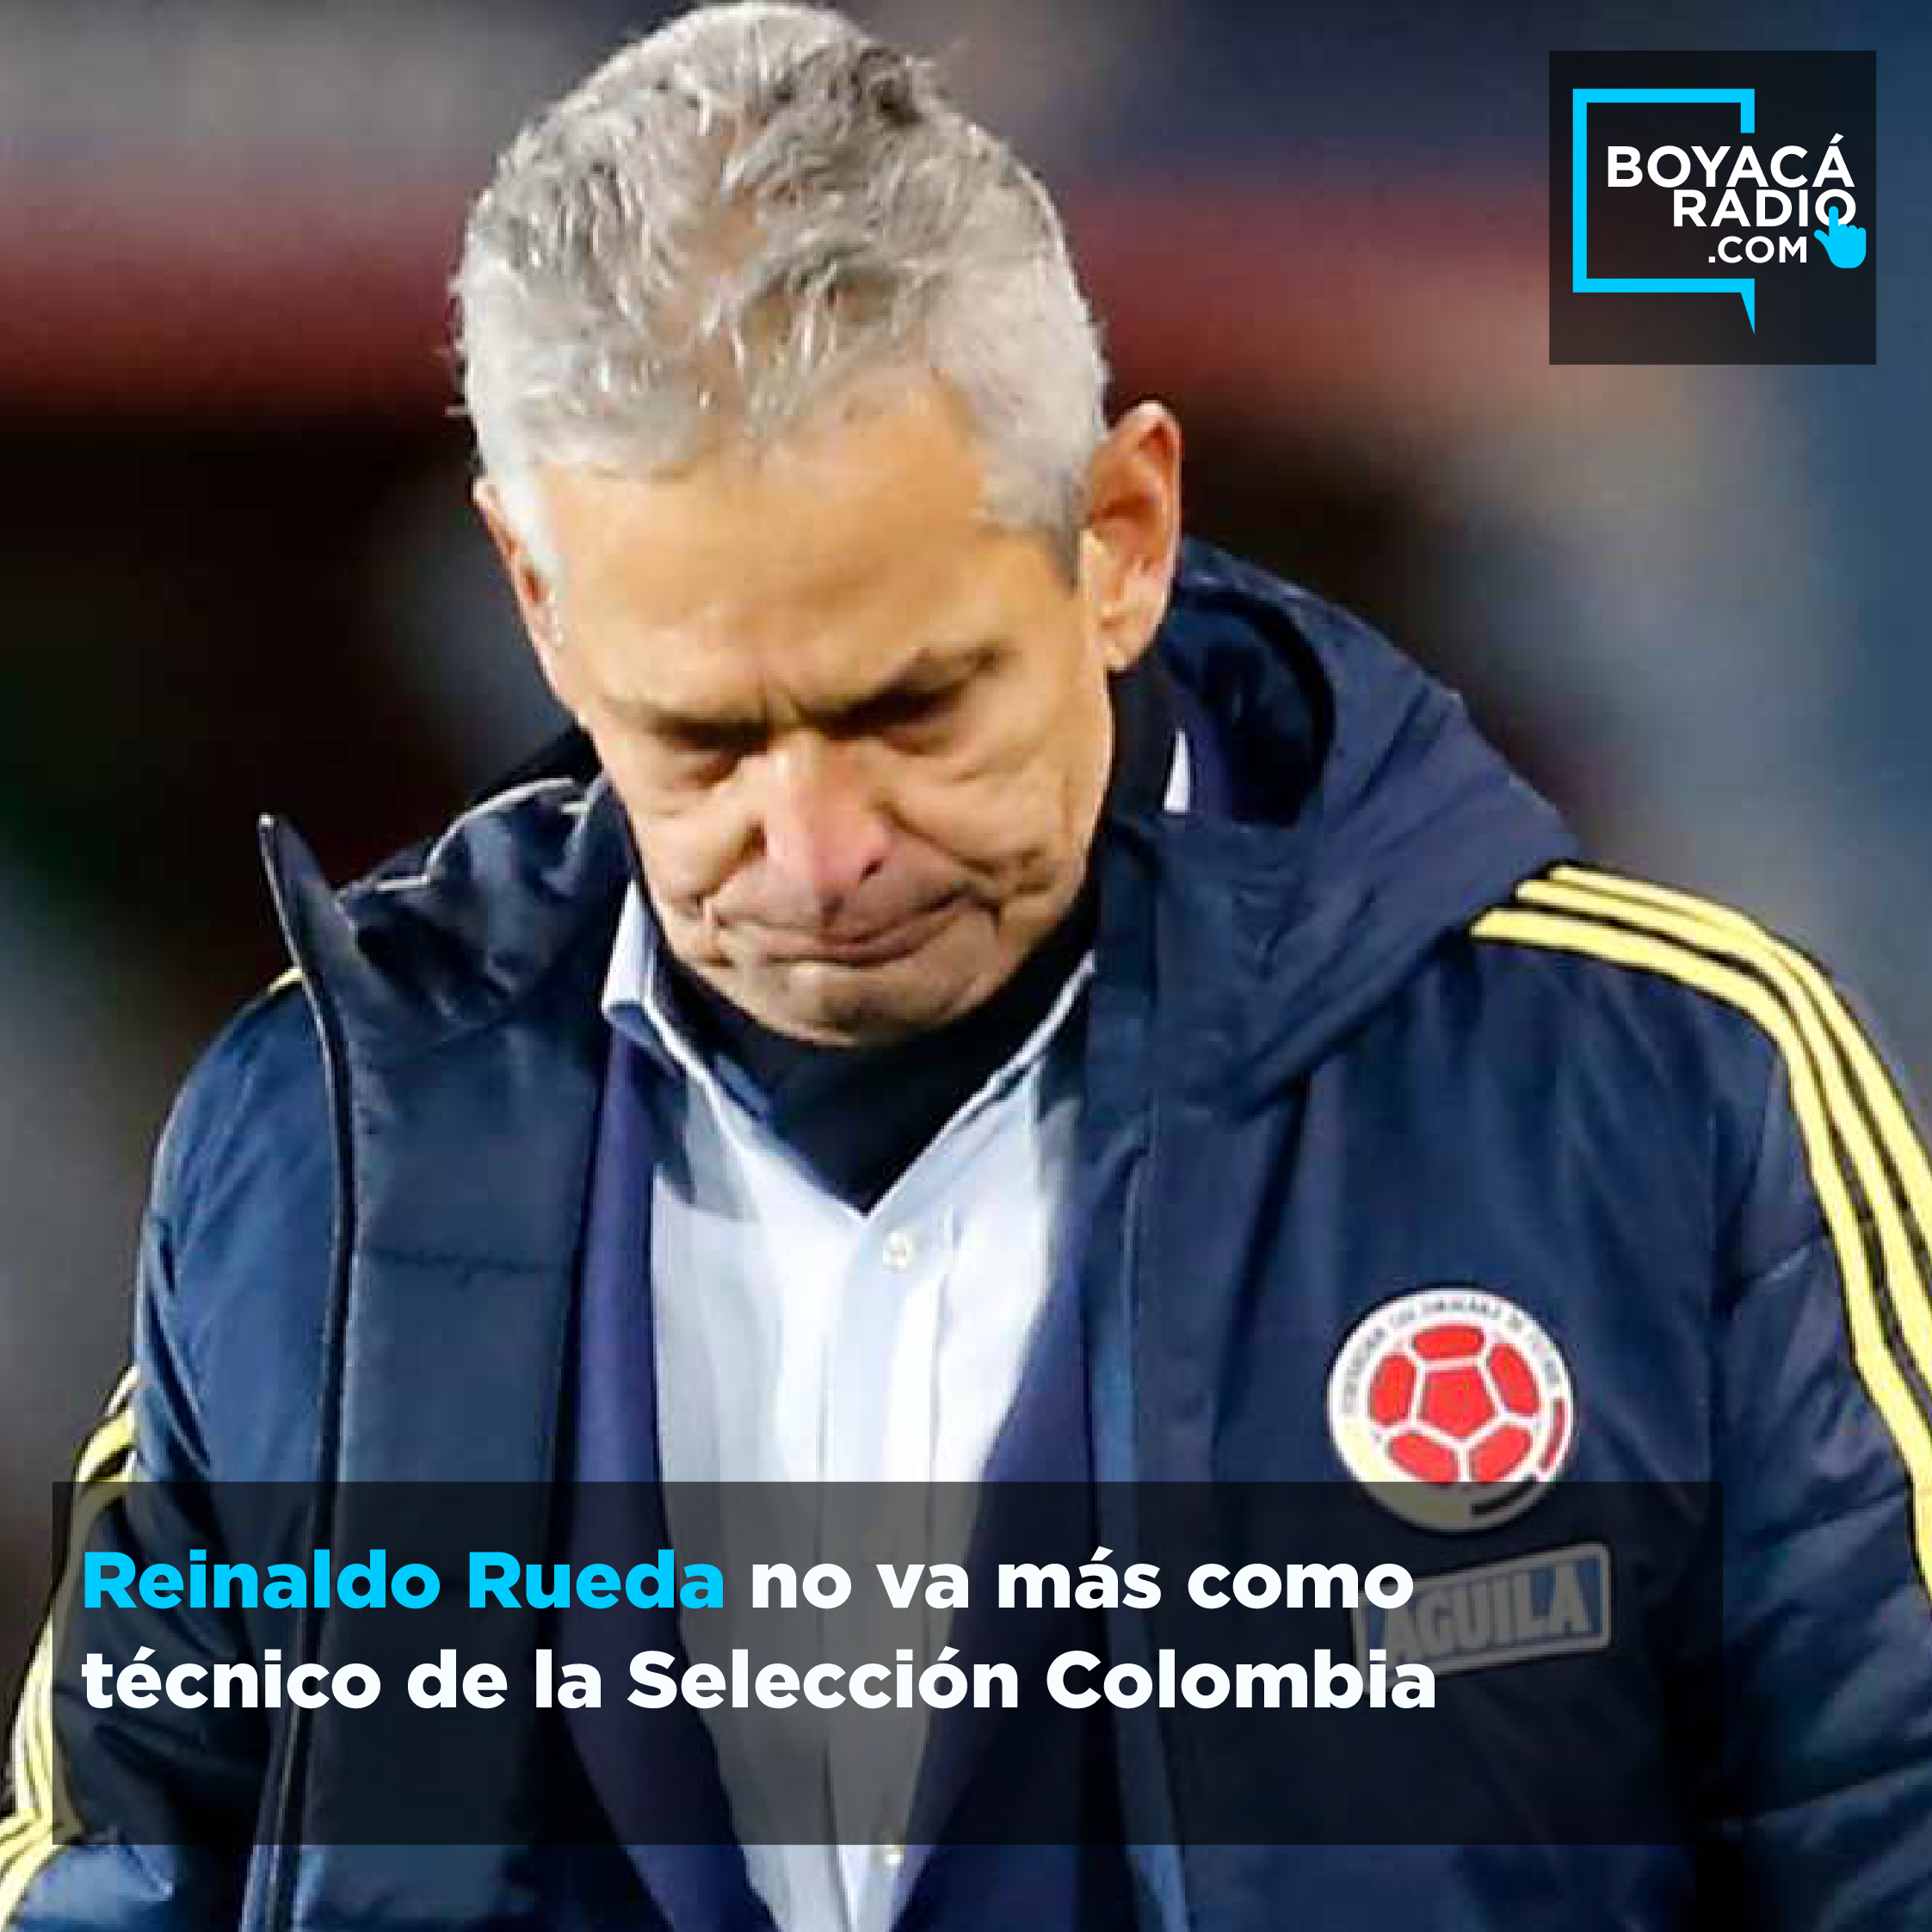 Reinaldo Rueda no va más como técnico de la Selección Colombia